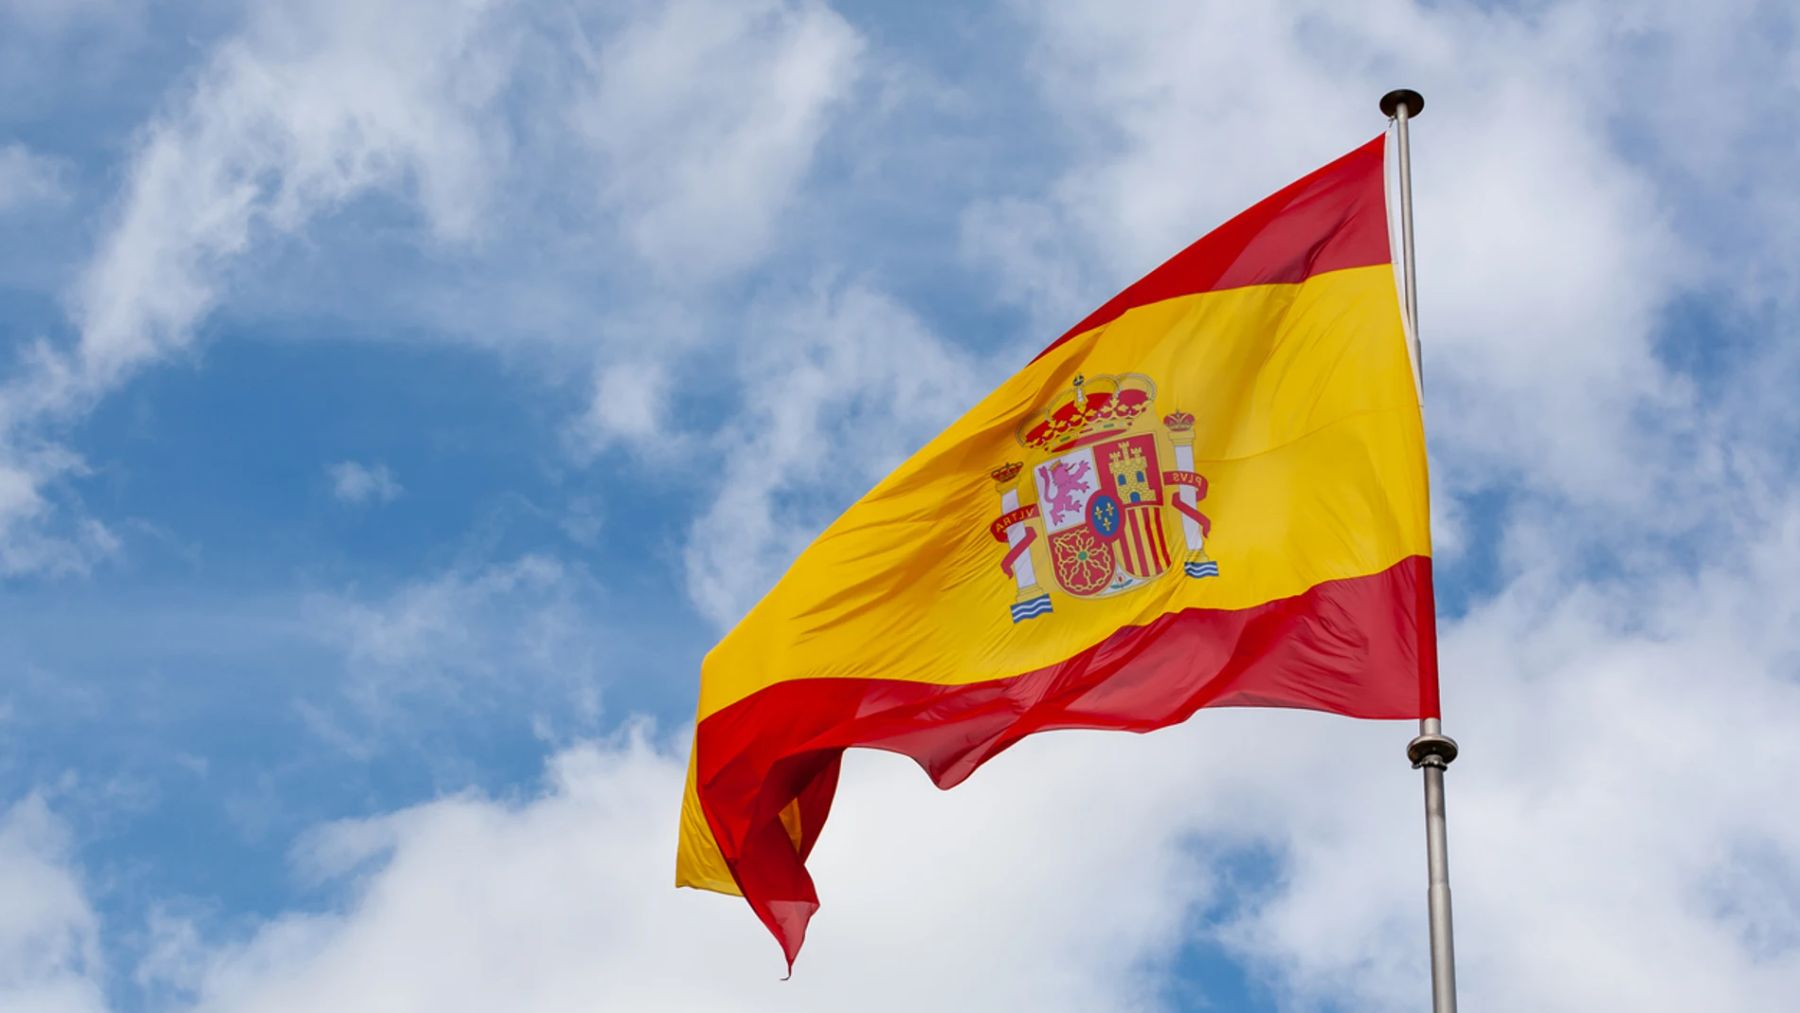 La bandera de España cumple años, ¿sabes cuál es su origen?